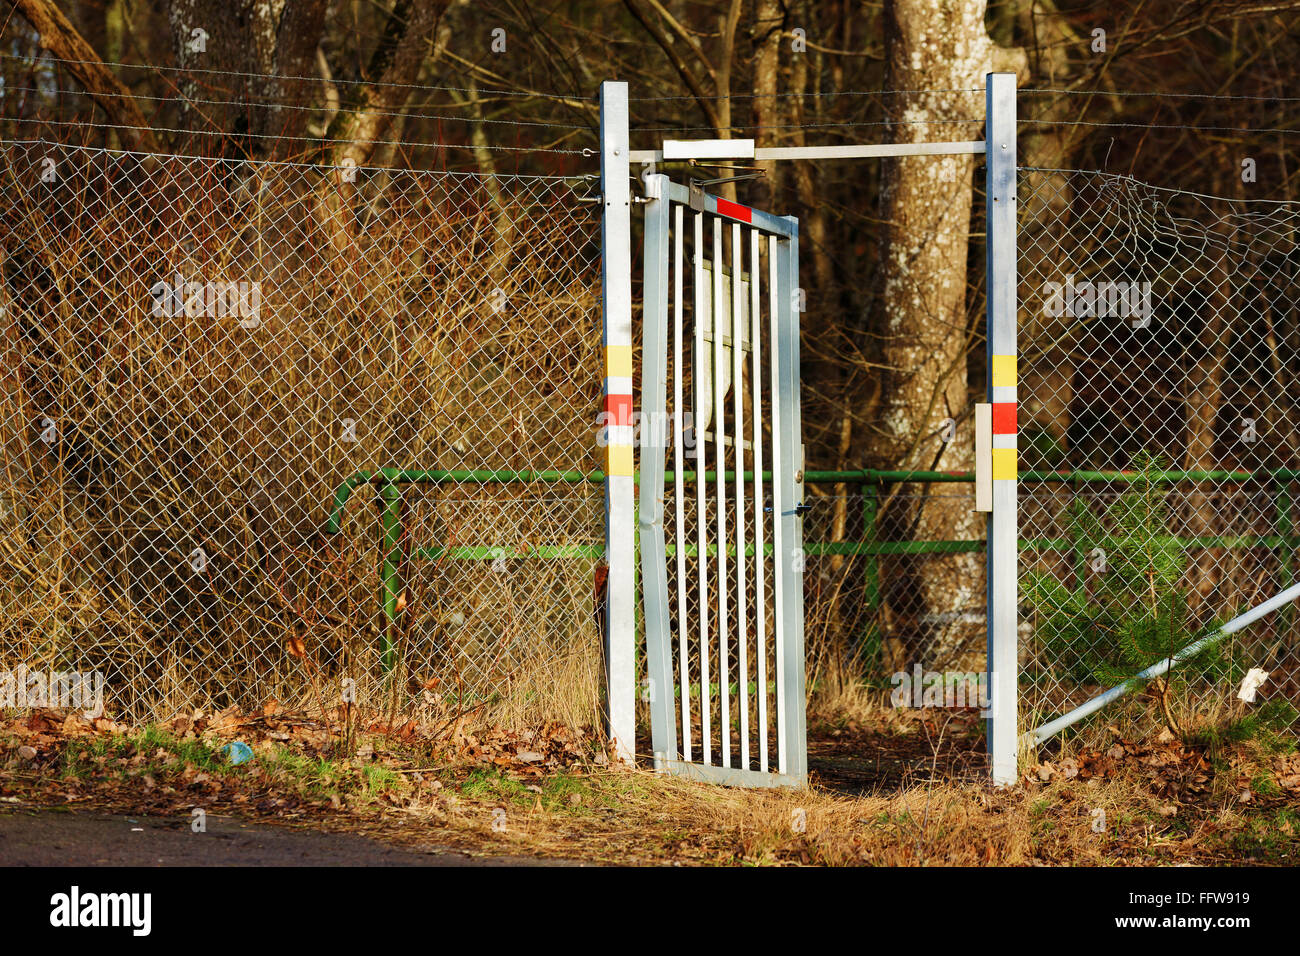 Eine offene Aluminium-Tor mit saldierten Zaun auf beiden Seiten. Tor ist etwas gebogen, was darauf gewaltsames Eindringen hindeutet. Zaun ist beschädigt. Stockfoto